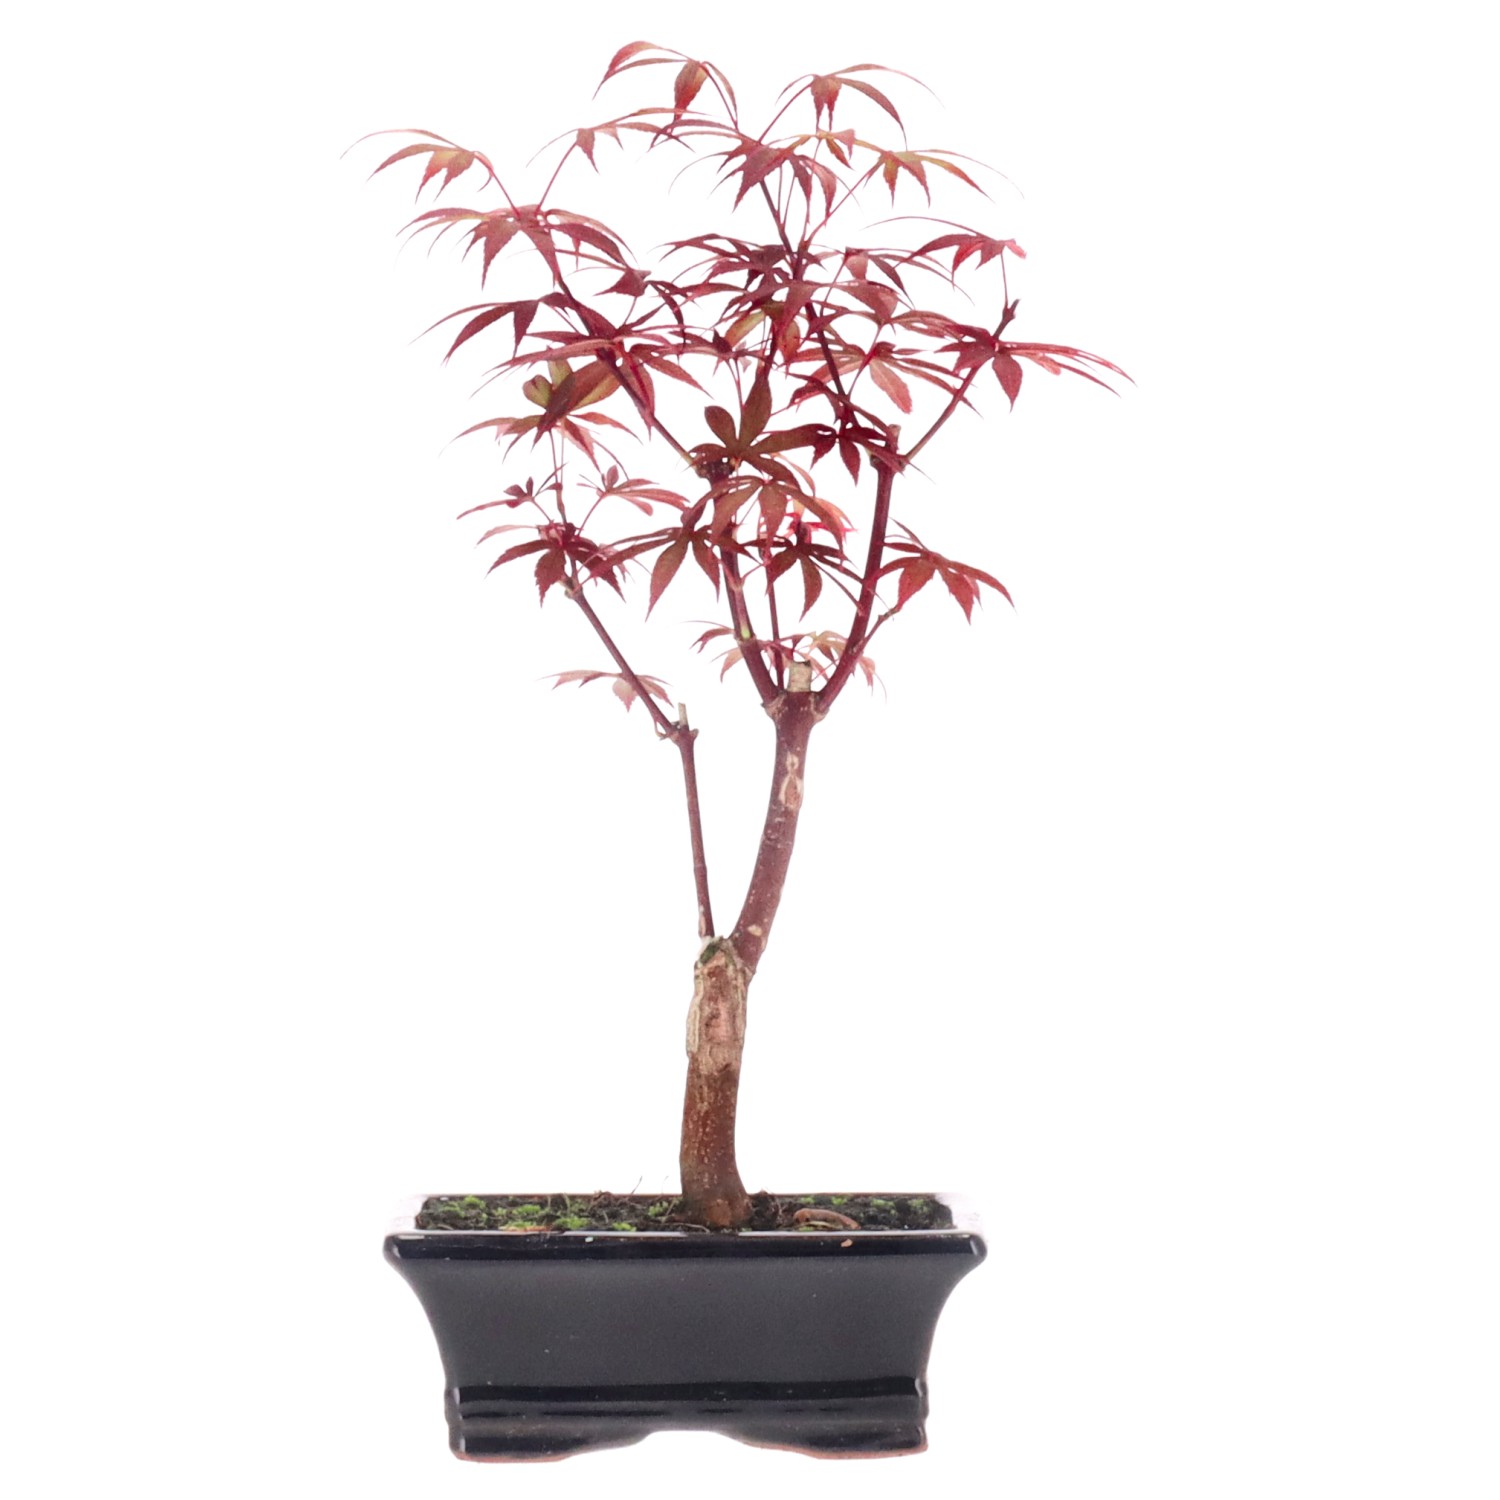 Acero rosso giapponese, ca. 7 anni (27 cm)